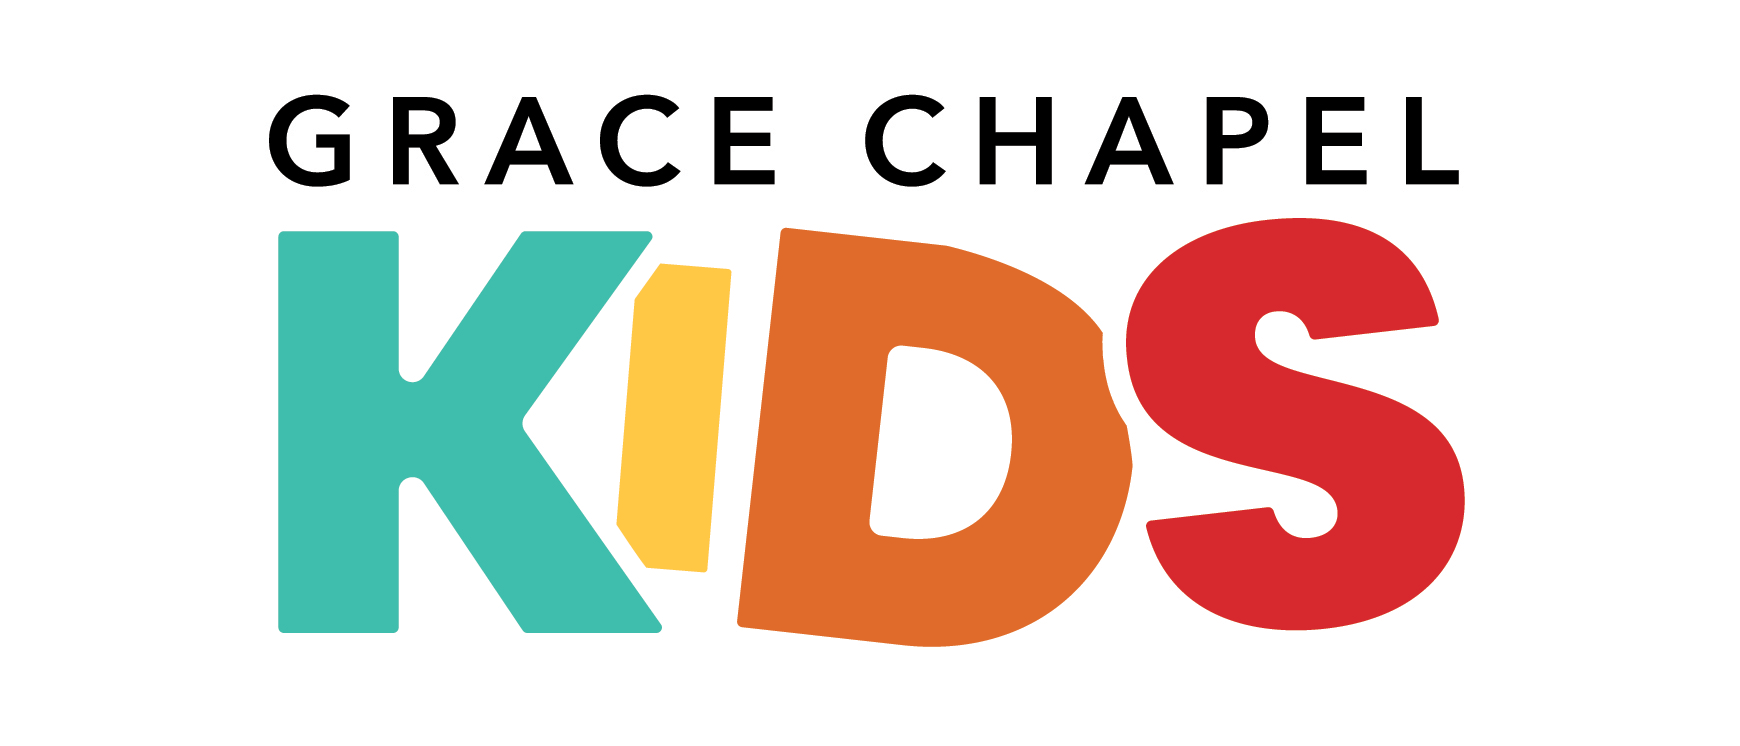 Grace Chapel Kids Ministry